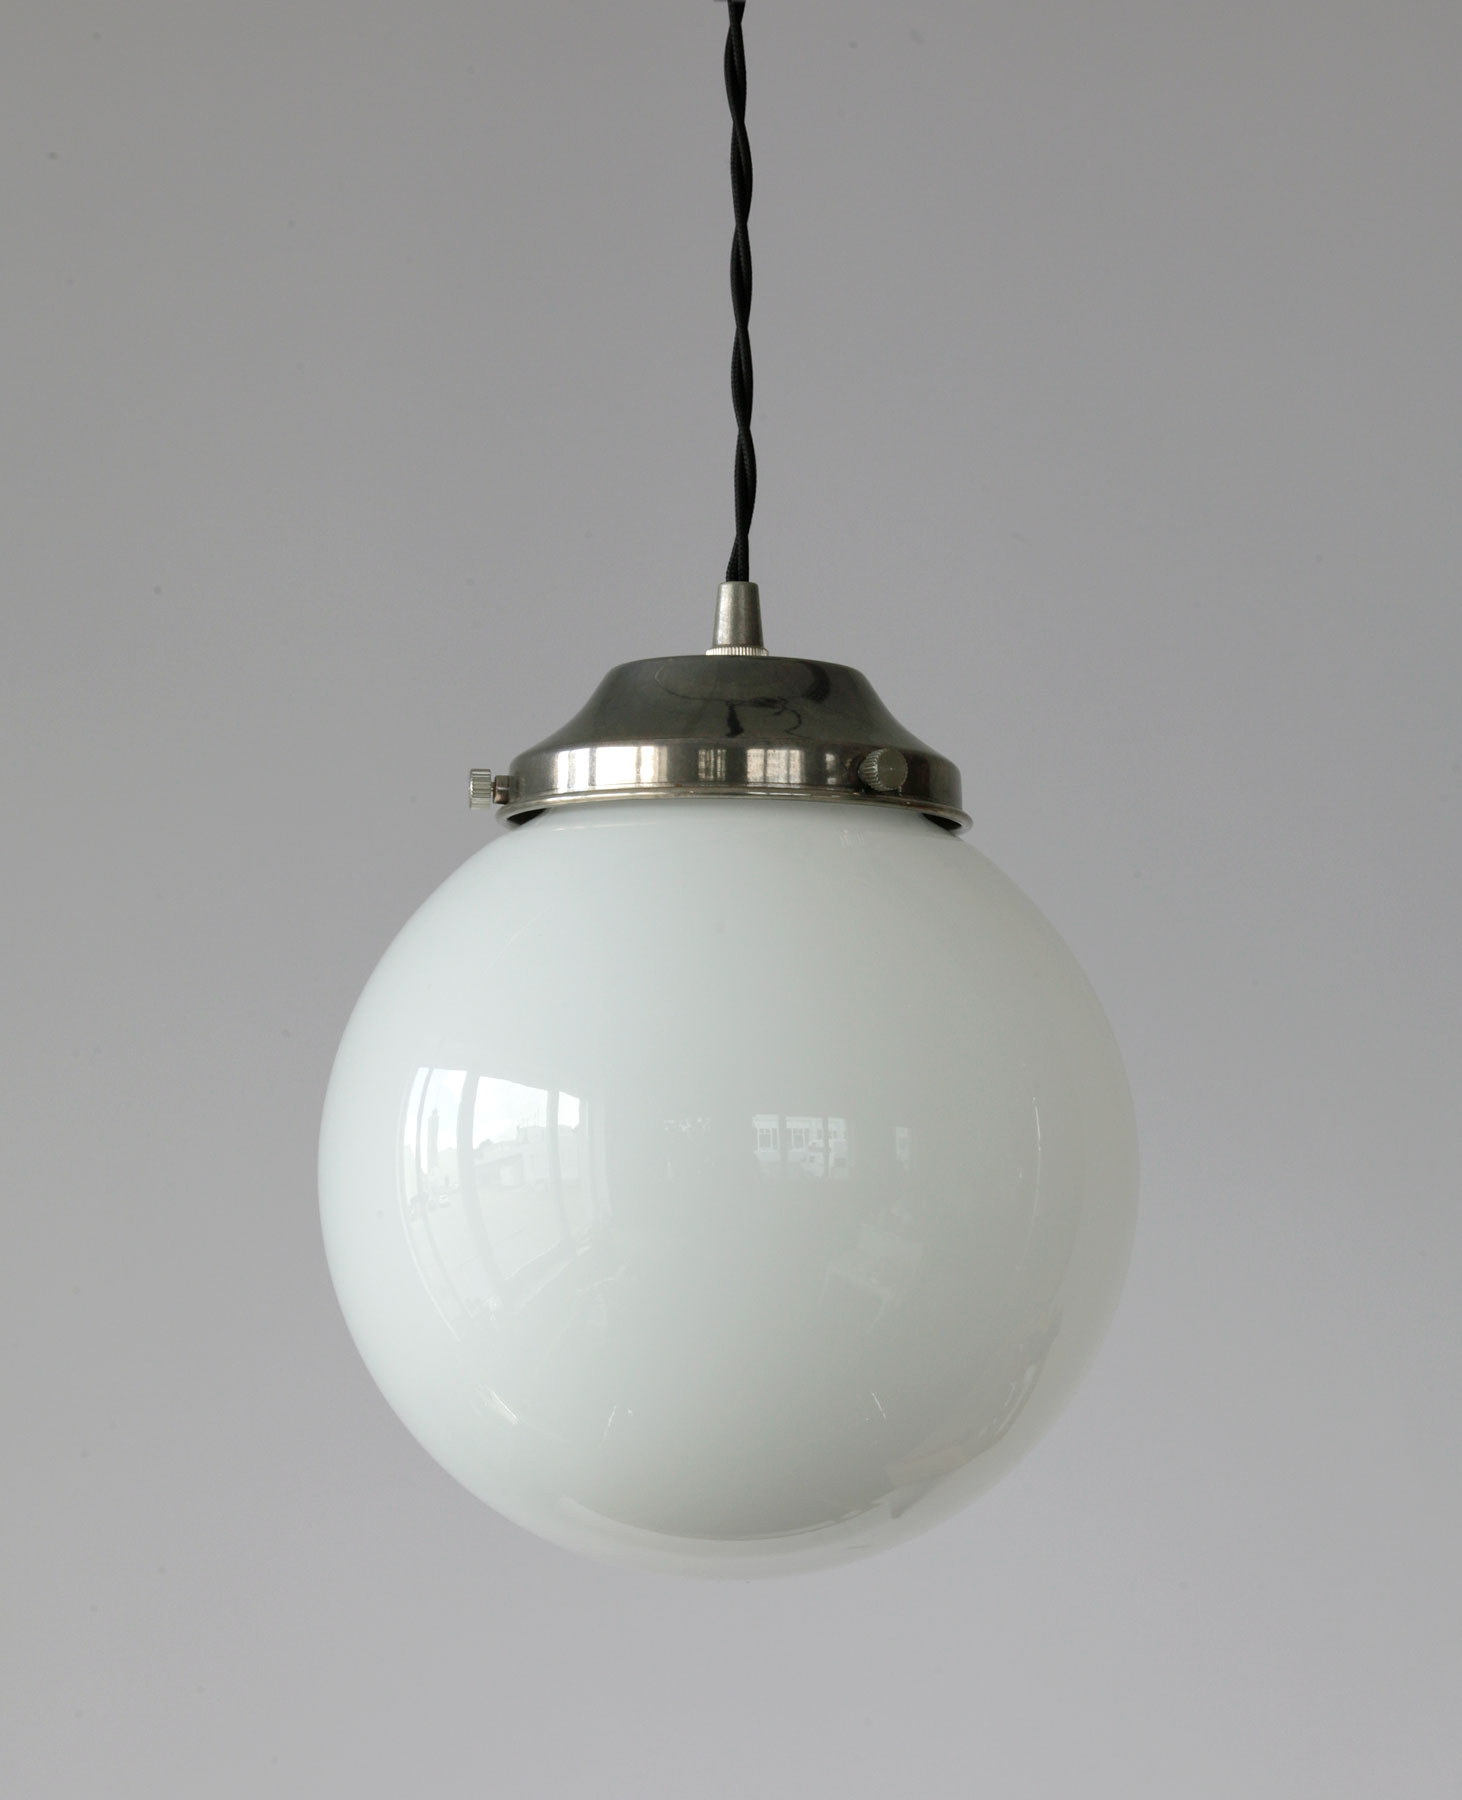 Nostalgische Kugel-Pendelleuchte, opal-weiße Glaskugel, Ø 20, 25, 30 cm: Kugel-Lampe (hier mit Ø 20 cm, Nostalgie-Glashalter in alt-silbern patiniert, zweiadriges Textil-Kabel)